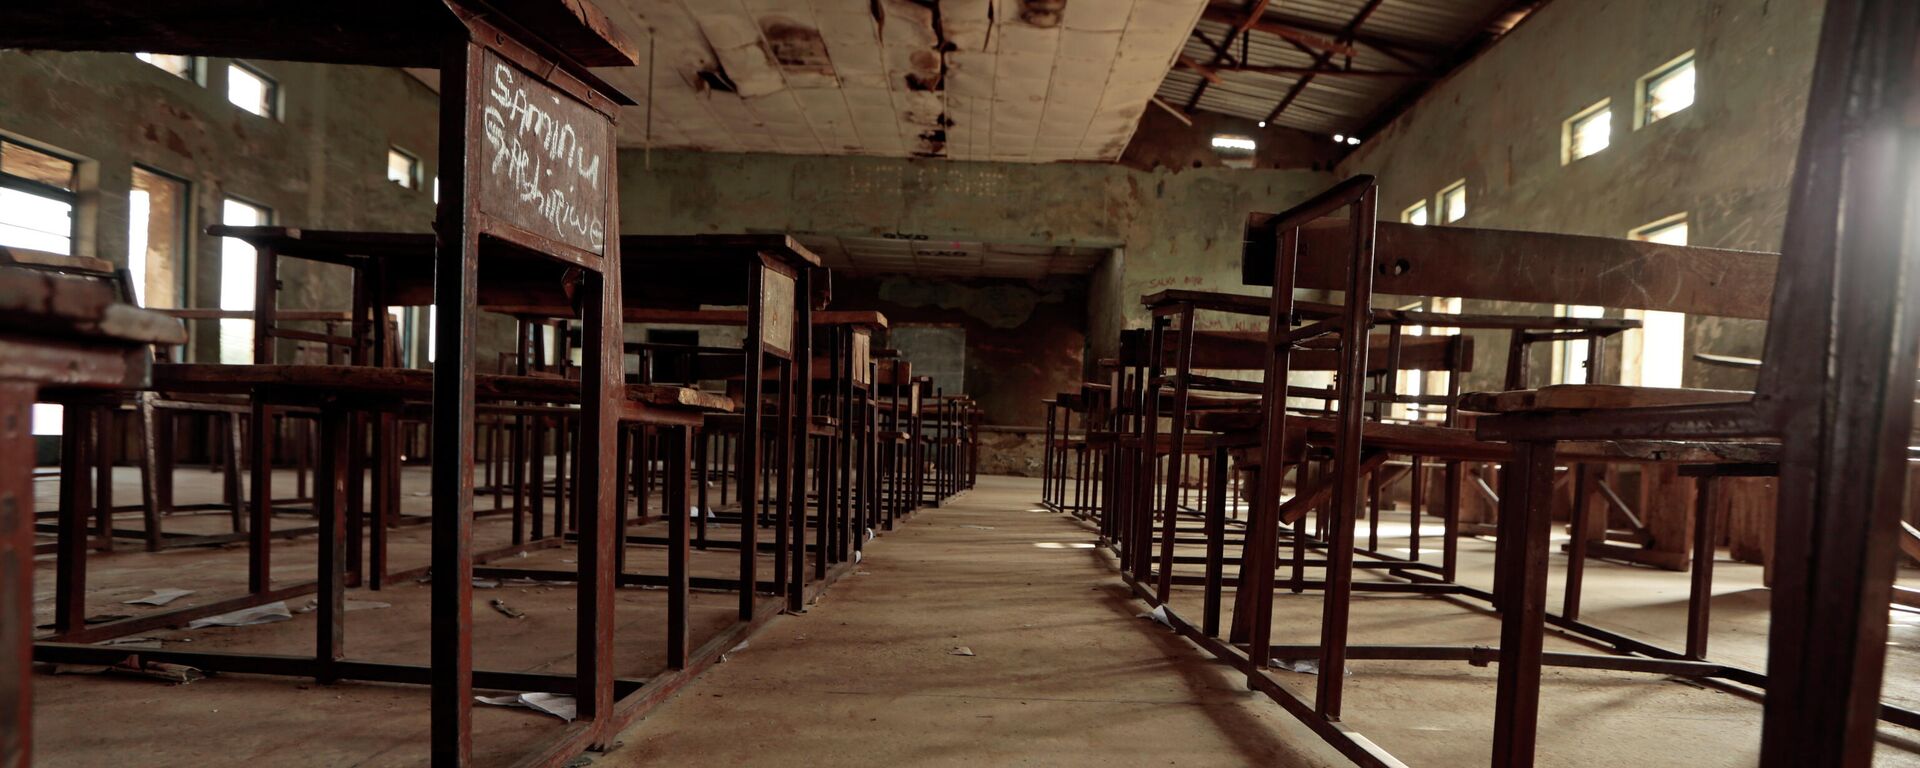 Una escuela en Nigeria - Sputnik Mundo, 1920, 26.02.2021